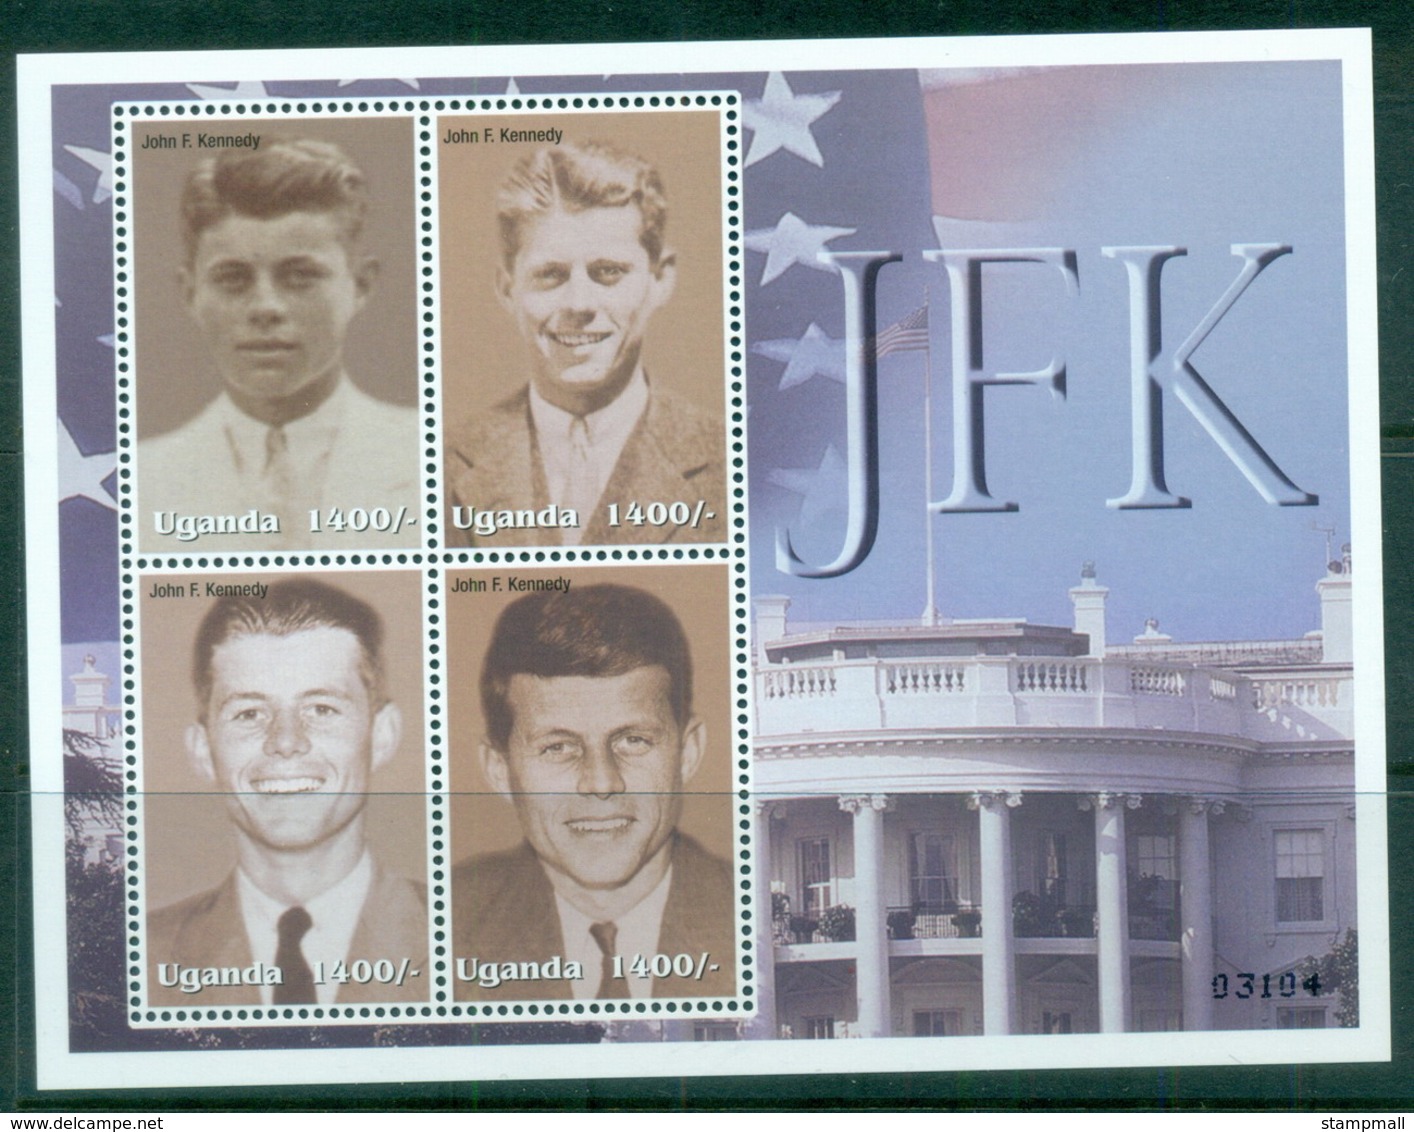 Uganda 2002 JFK, Kennedy 1400/- MS MUH - Uganda (1962-...)